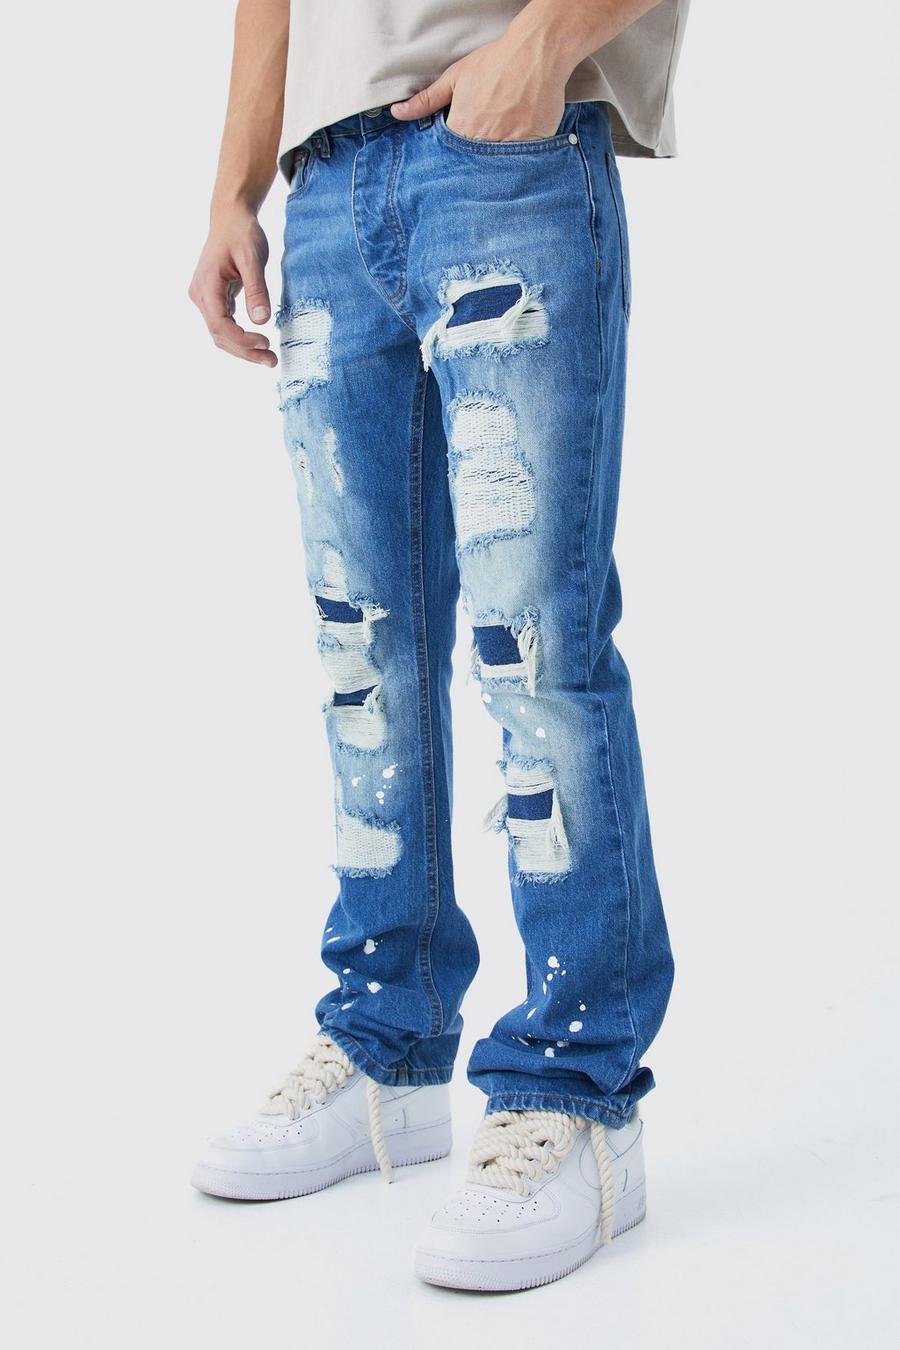 Jeans Slim Fit in denim rigido candeggiati con strappi & rattoppi, Light blue